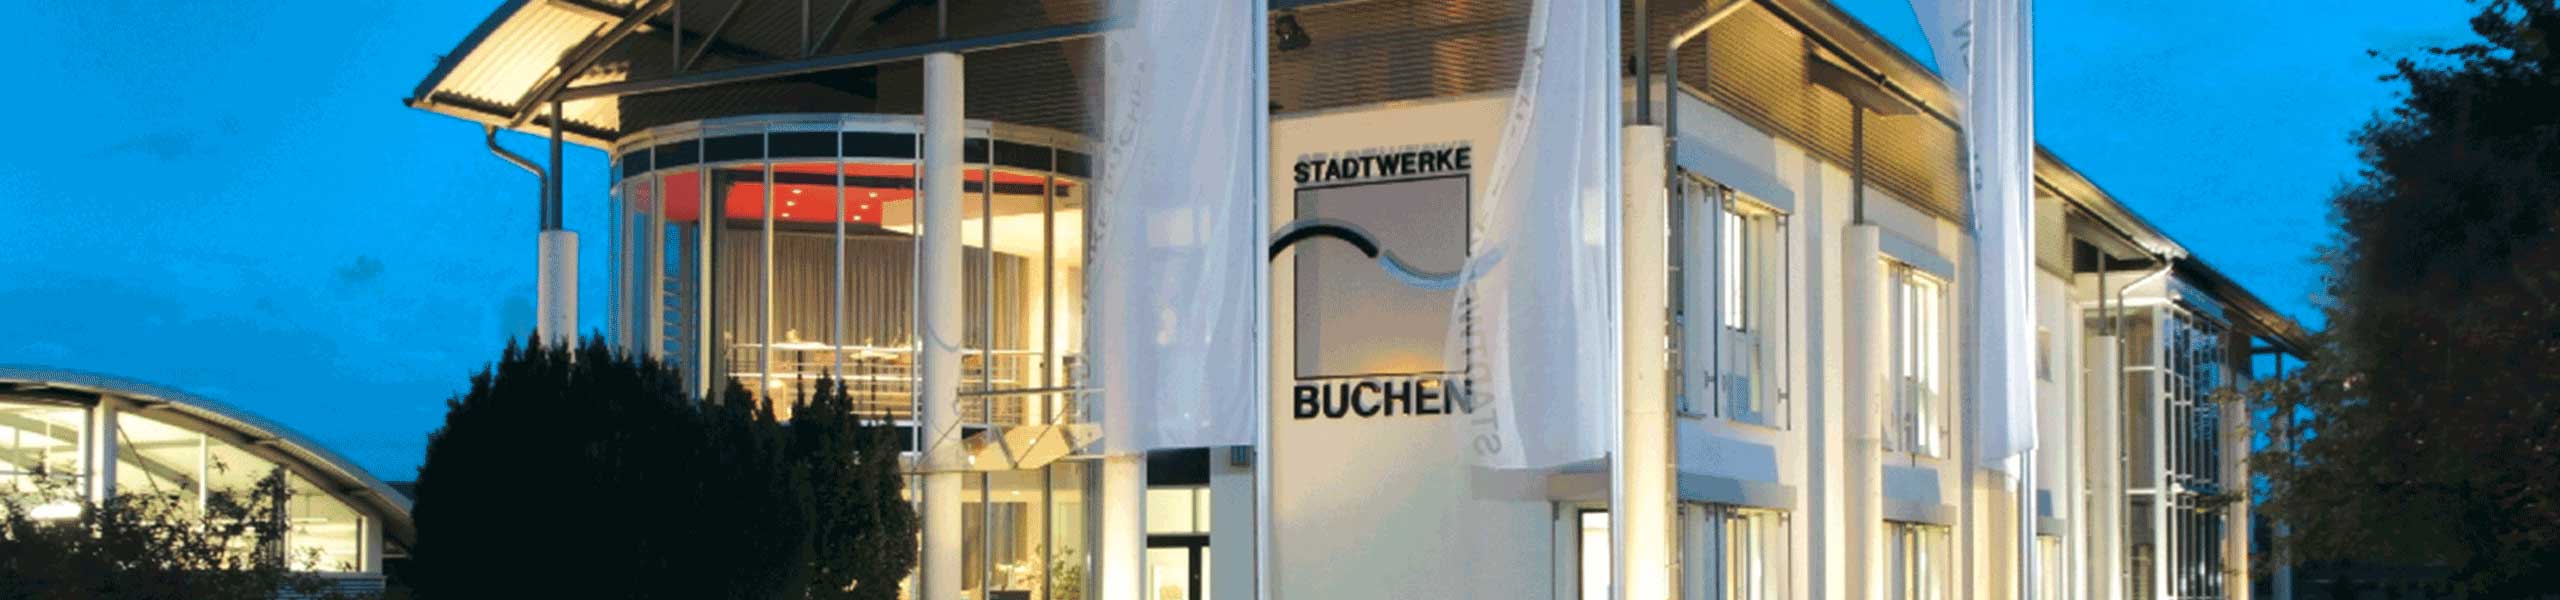 Stadtwerke Buchen GmbH & Co KG - Ihr Versorger vor Ort - Datenschutzerklärung Chatbot